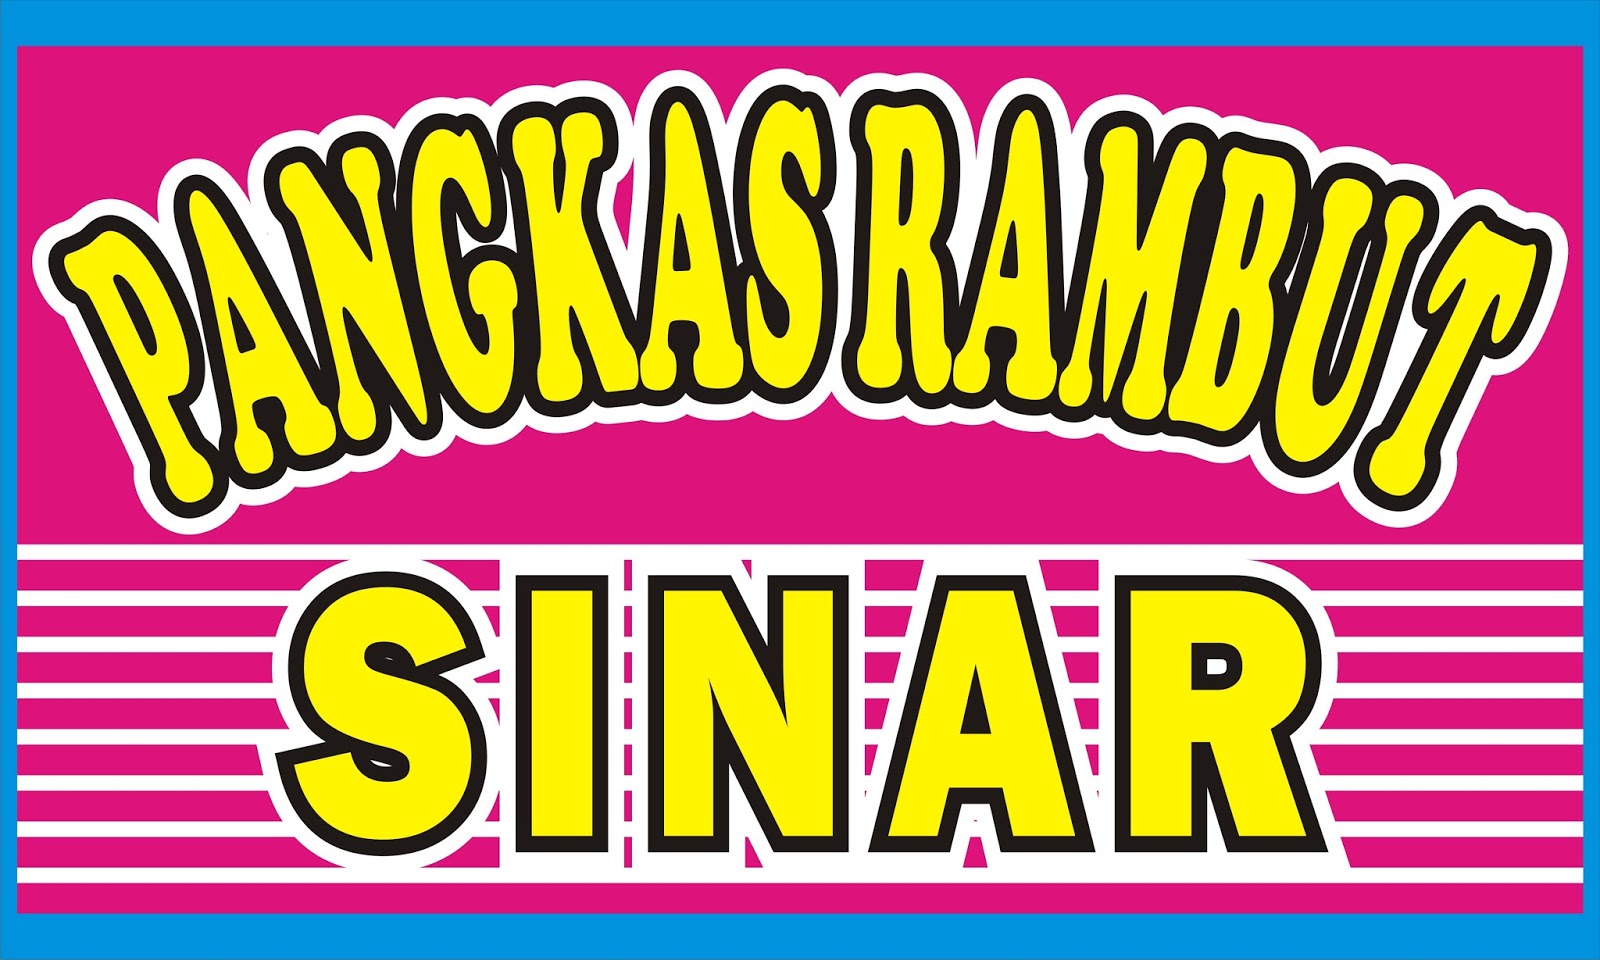 Download Contoh Spanduk Pangkas Rambut  cdr KARYAKU